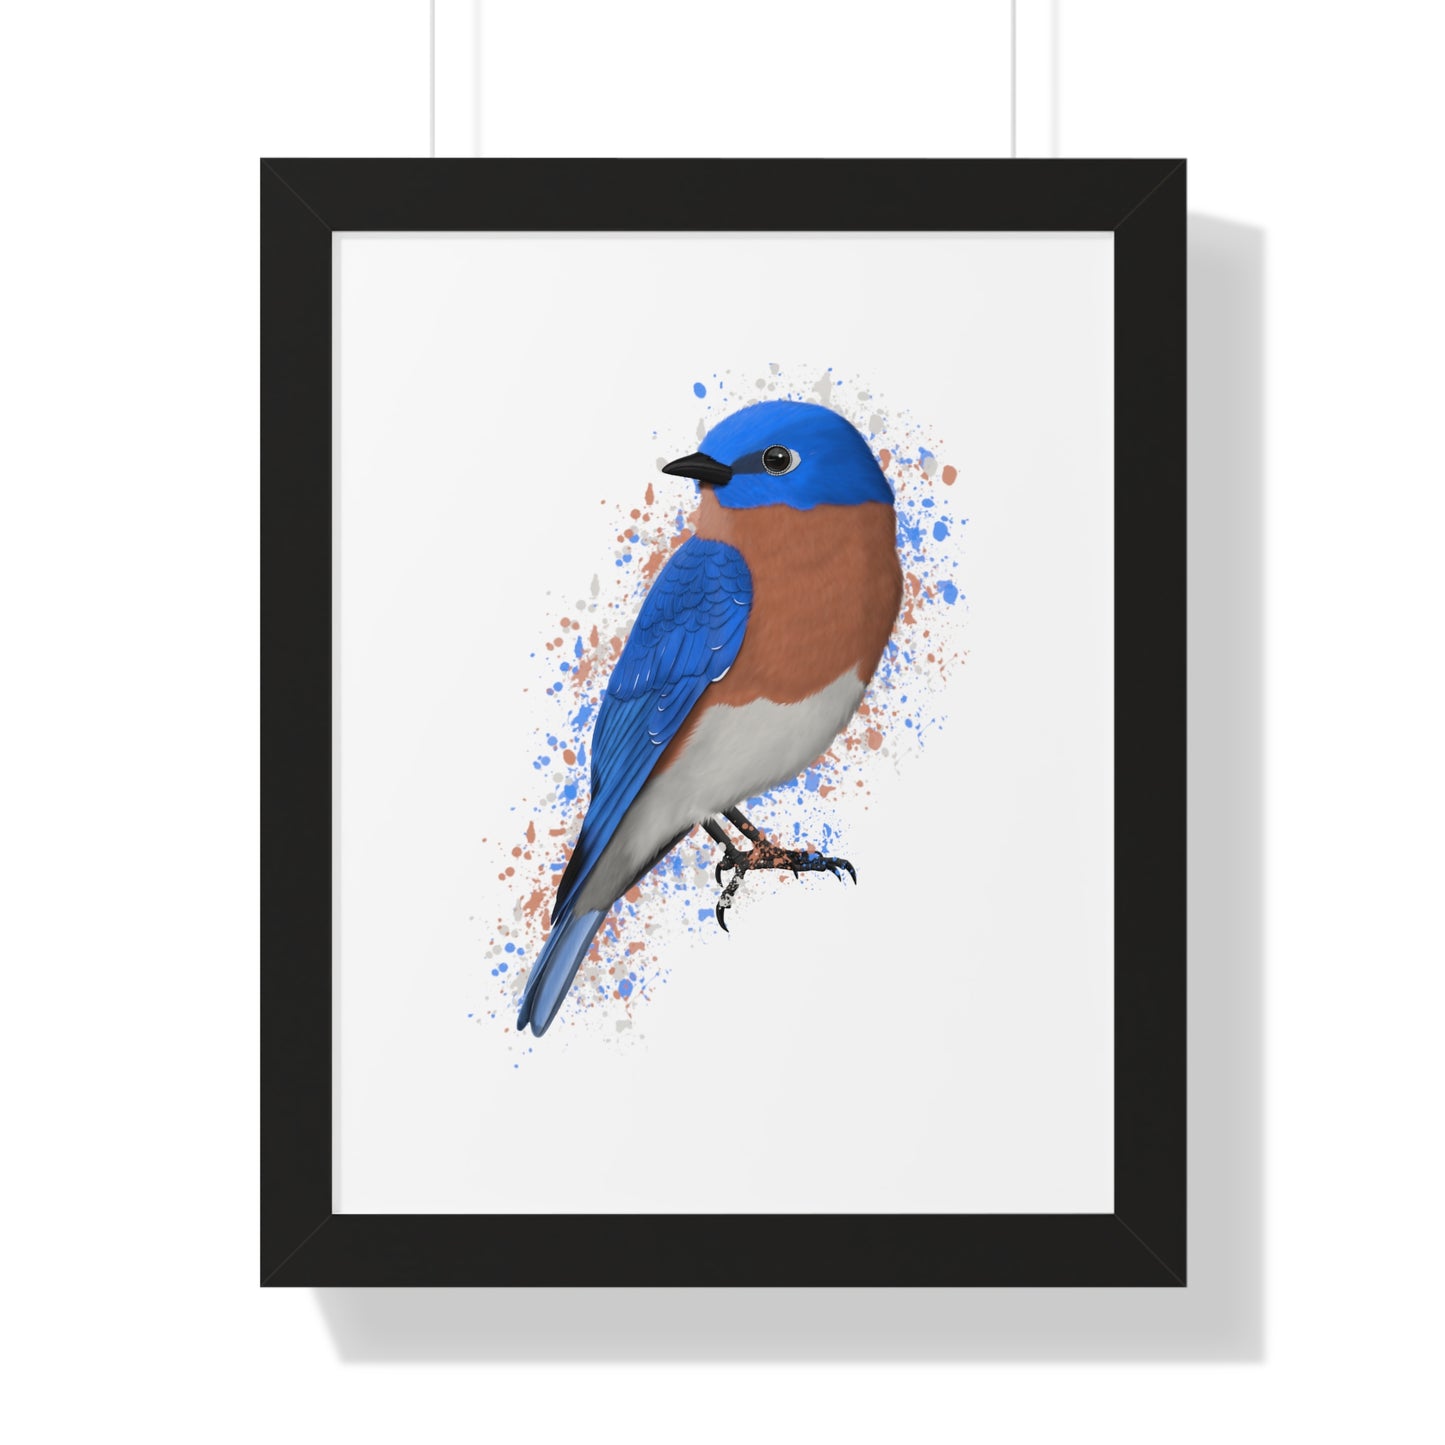 Bluebird Bird Framed Poster